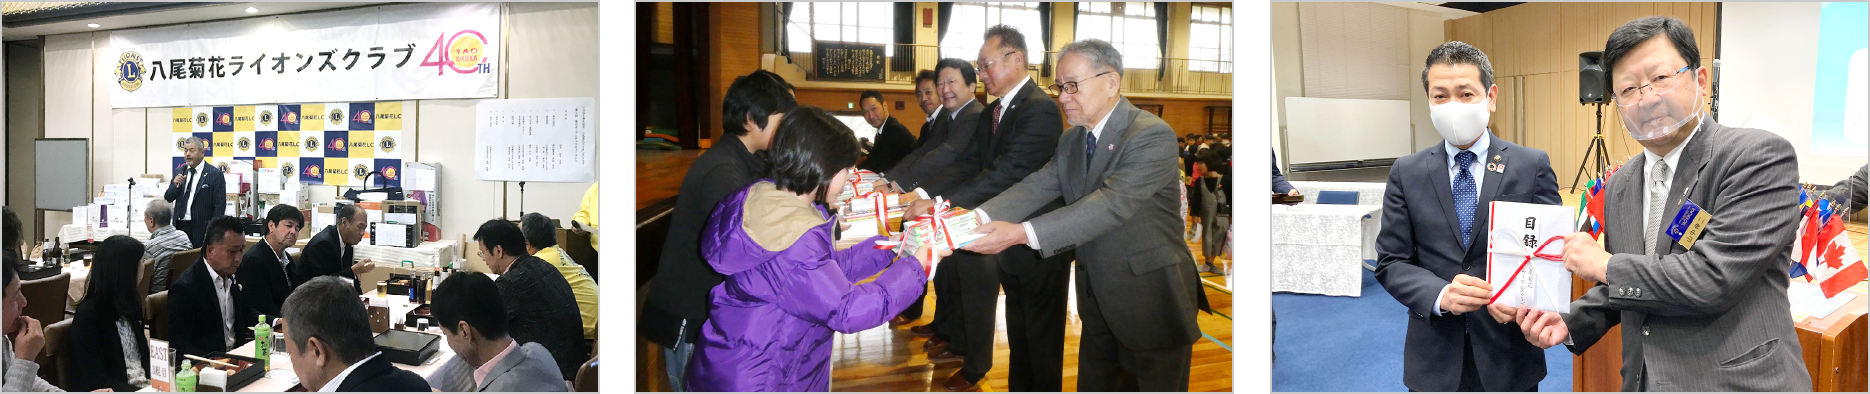 菊花オープンチャリティゴルフコンペ八尾市の小学校に図書を寄贈